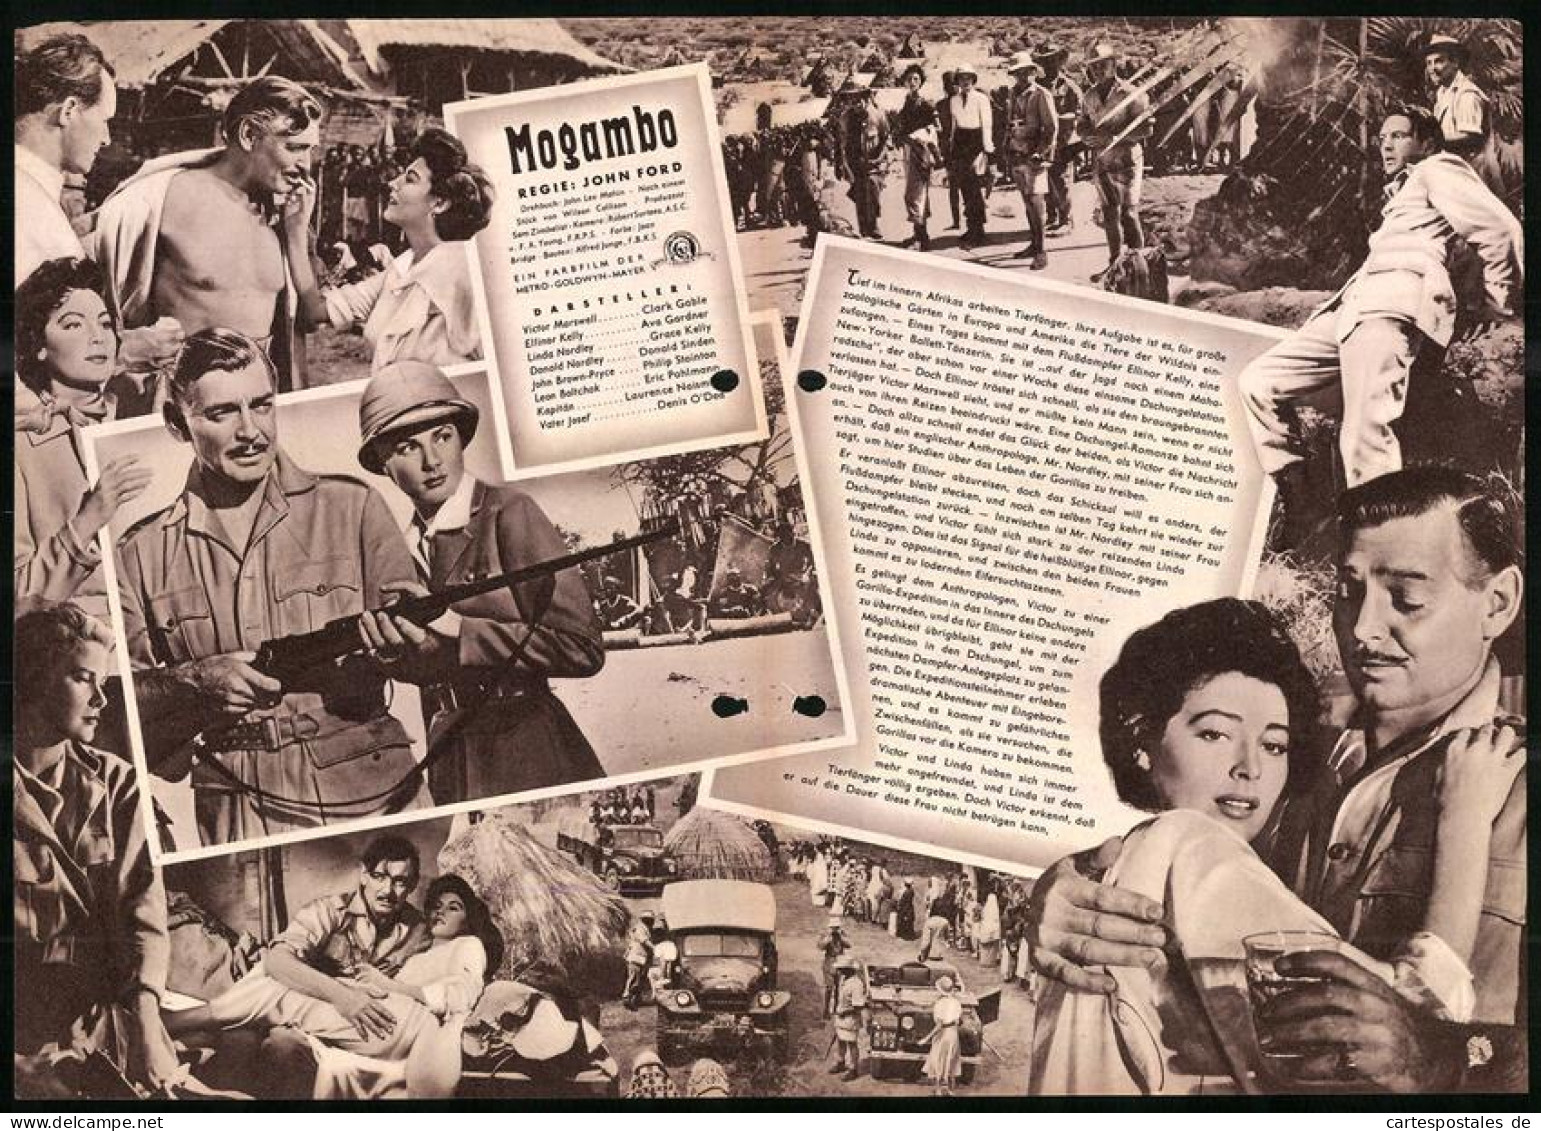 Filmprogramm IFB Nr. 2466, Mogambo, Clark Gable, Ava Gardner, Grace Kelly, Regie: John Ford  - Revistas